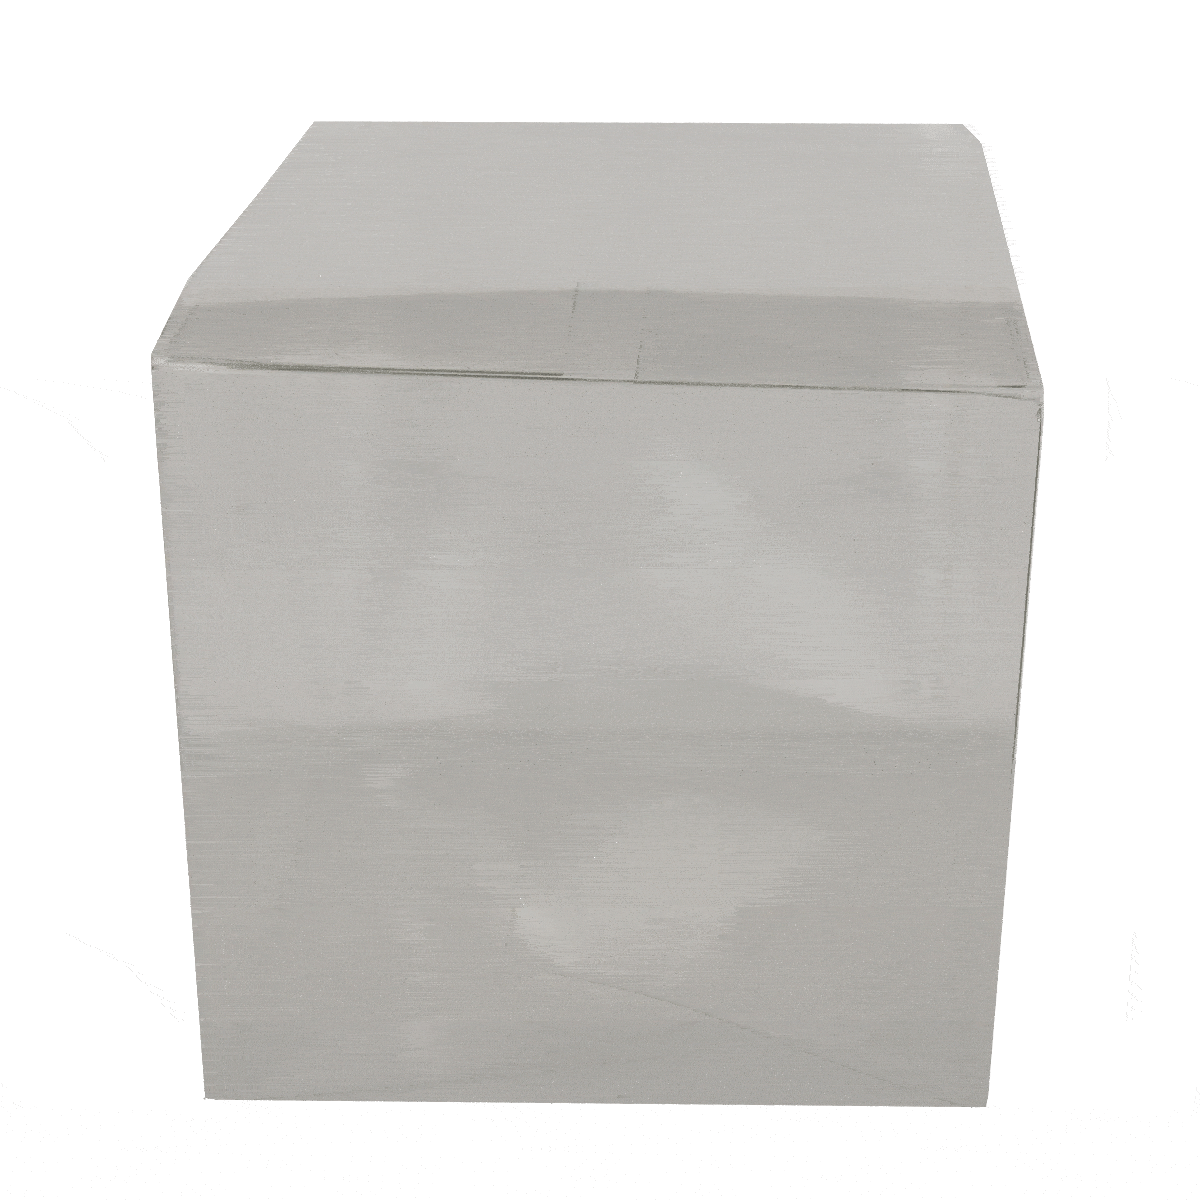 Acetate (PVC) Large Cube #10 (100x100x100mm)